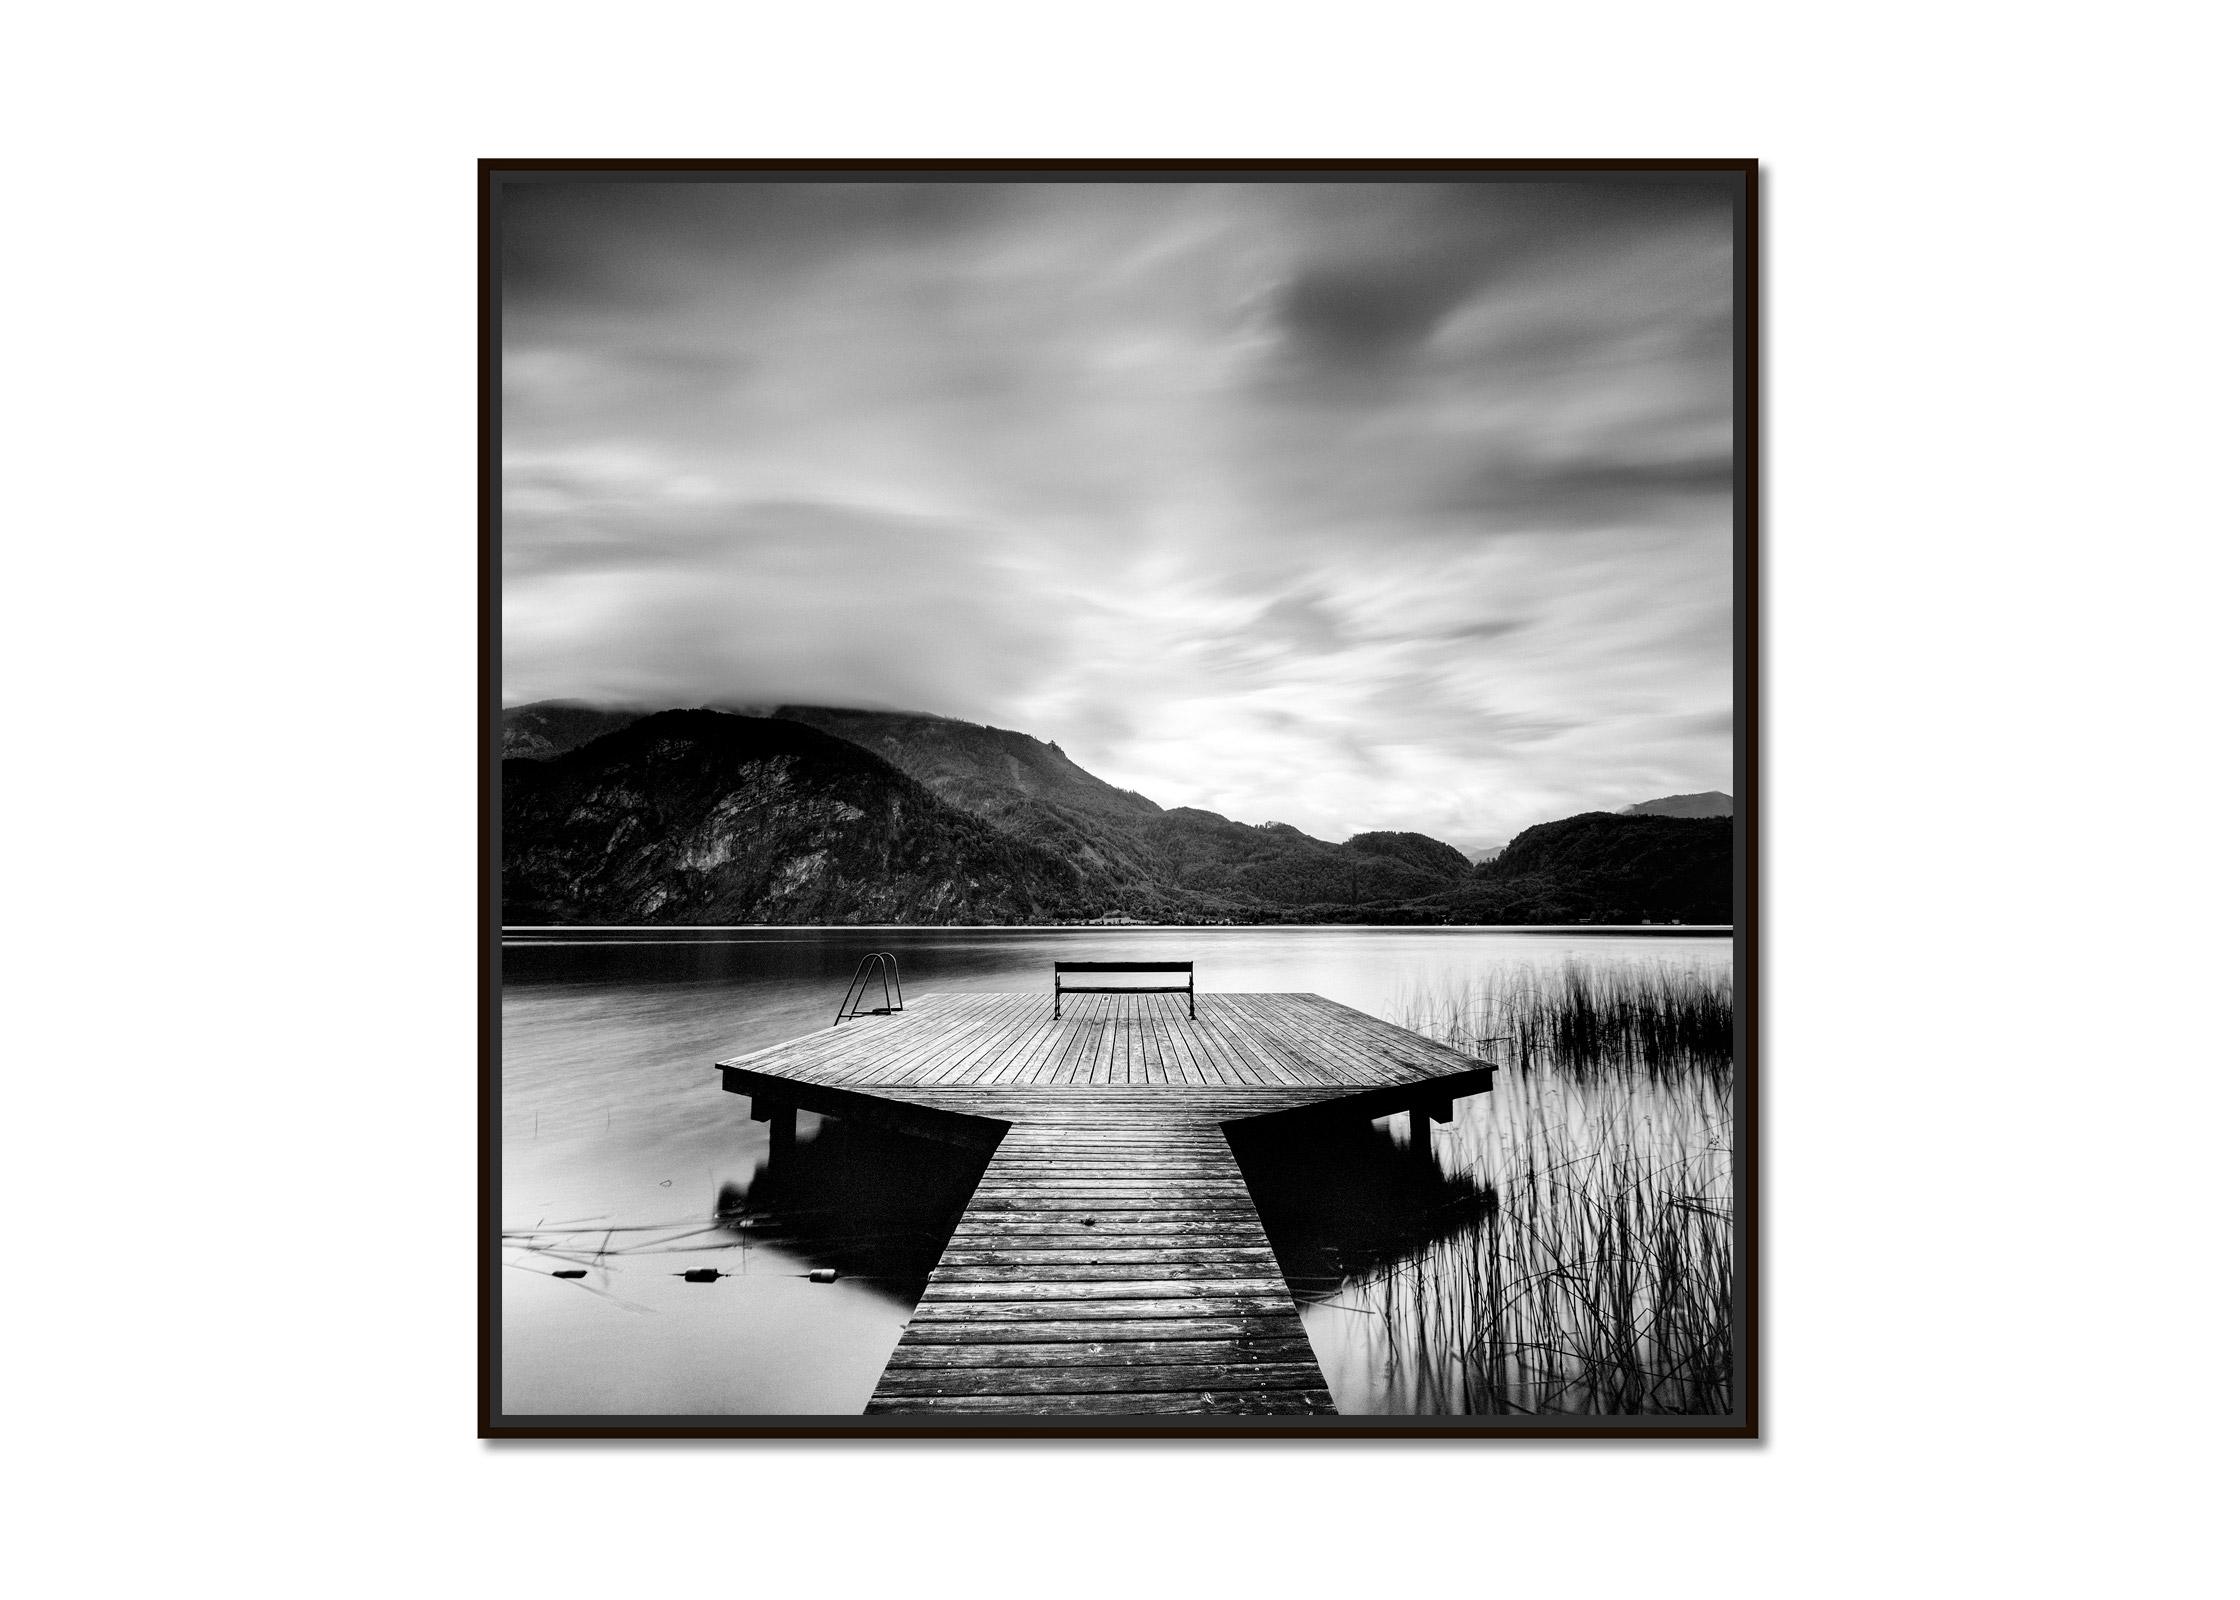 Wood Pier, lac, nuageux, orage, photographie en noir et blanc, paysage aquatique d'art - Photograph de Gerald Berghammer